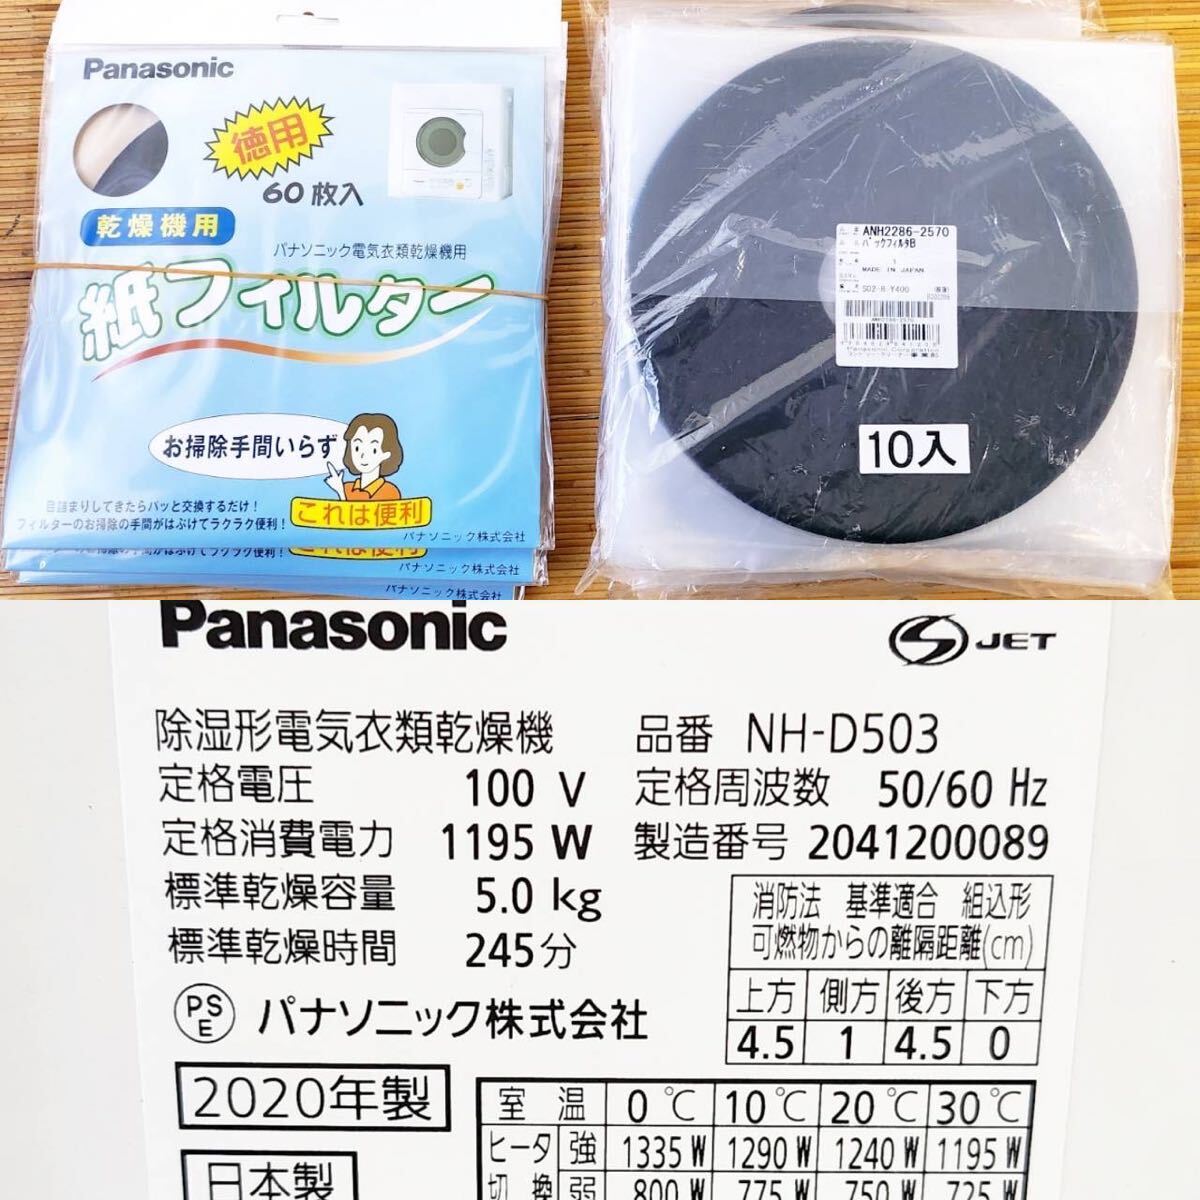 2020年製 Panasonic パナソニック 電気衣類乾燥機 NH-D503 容量5kg 毛布乾燥 ヒーター乾燥 シワ取り機能 タイマー 動作確認済み【NK5766】_画像10